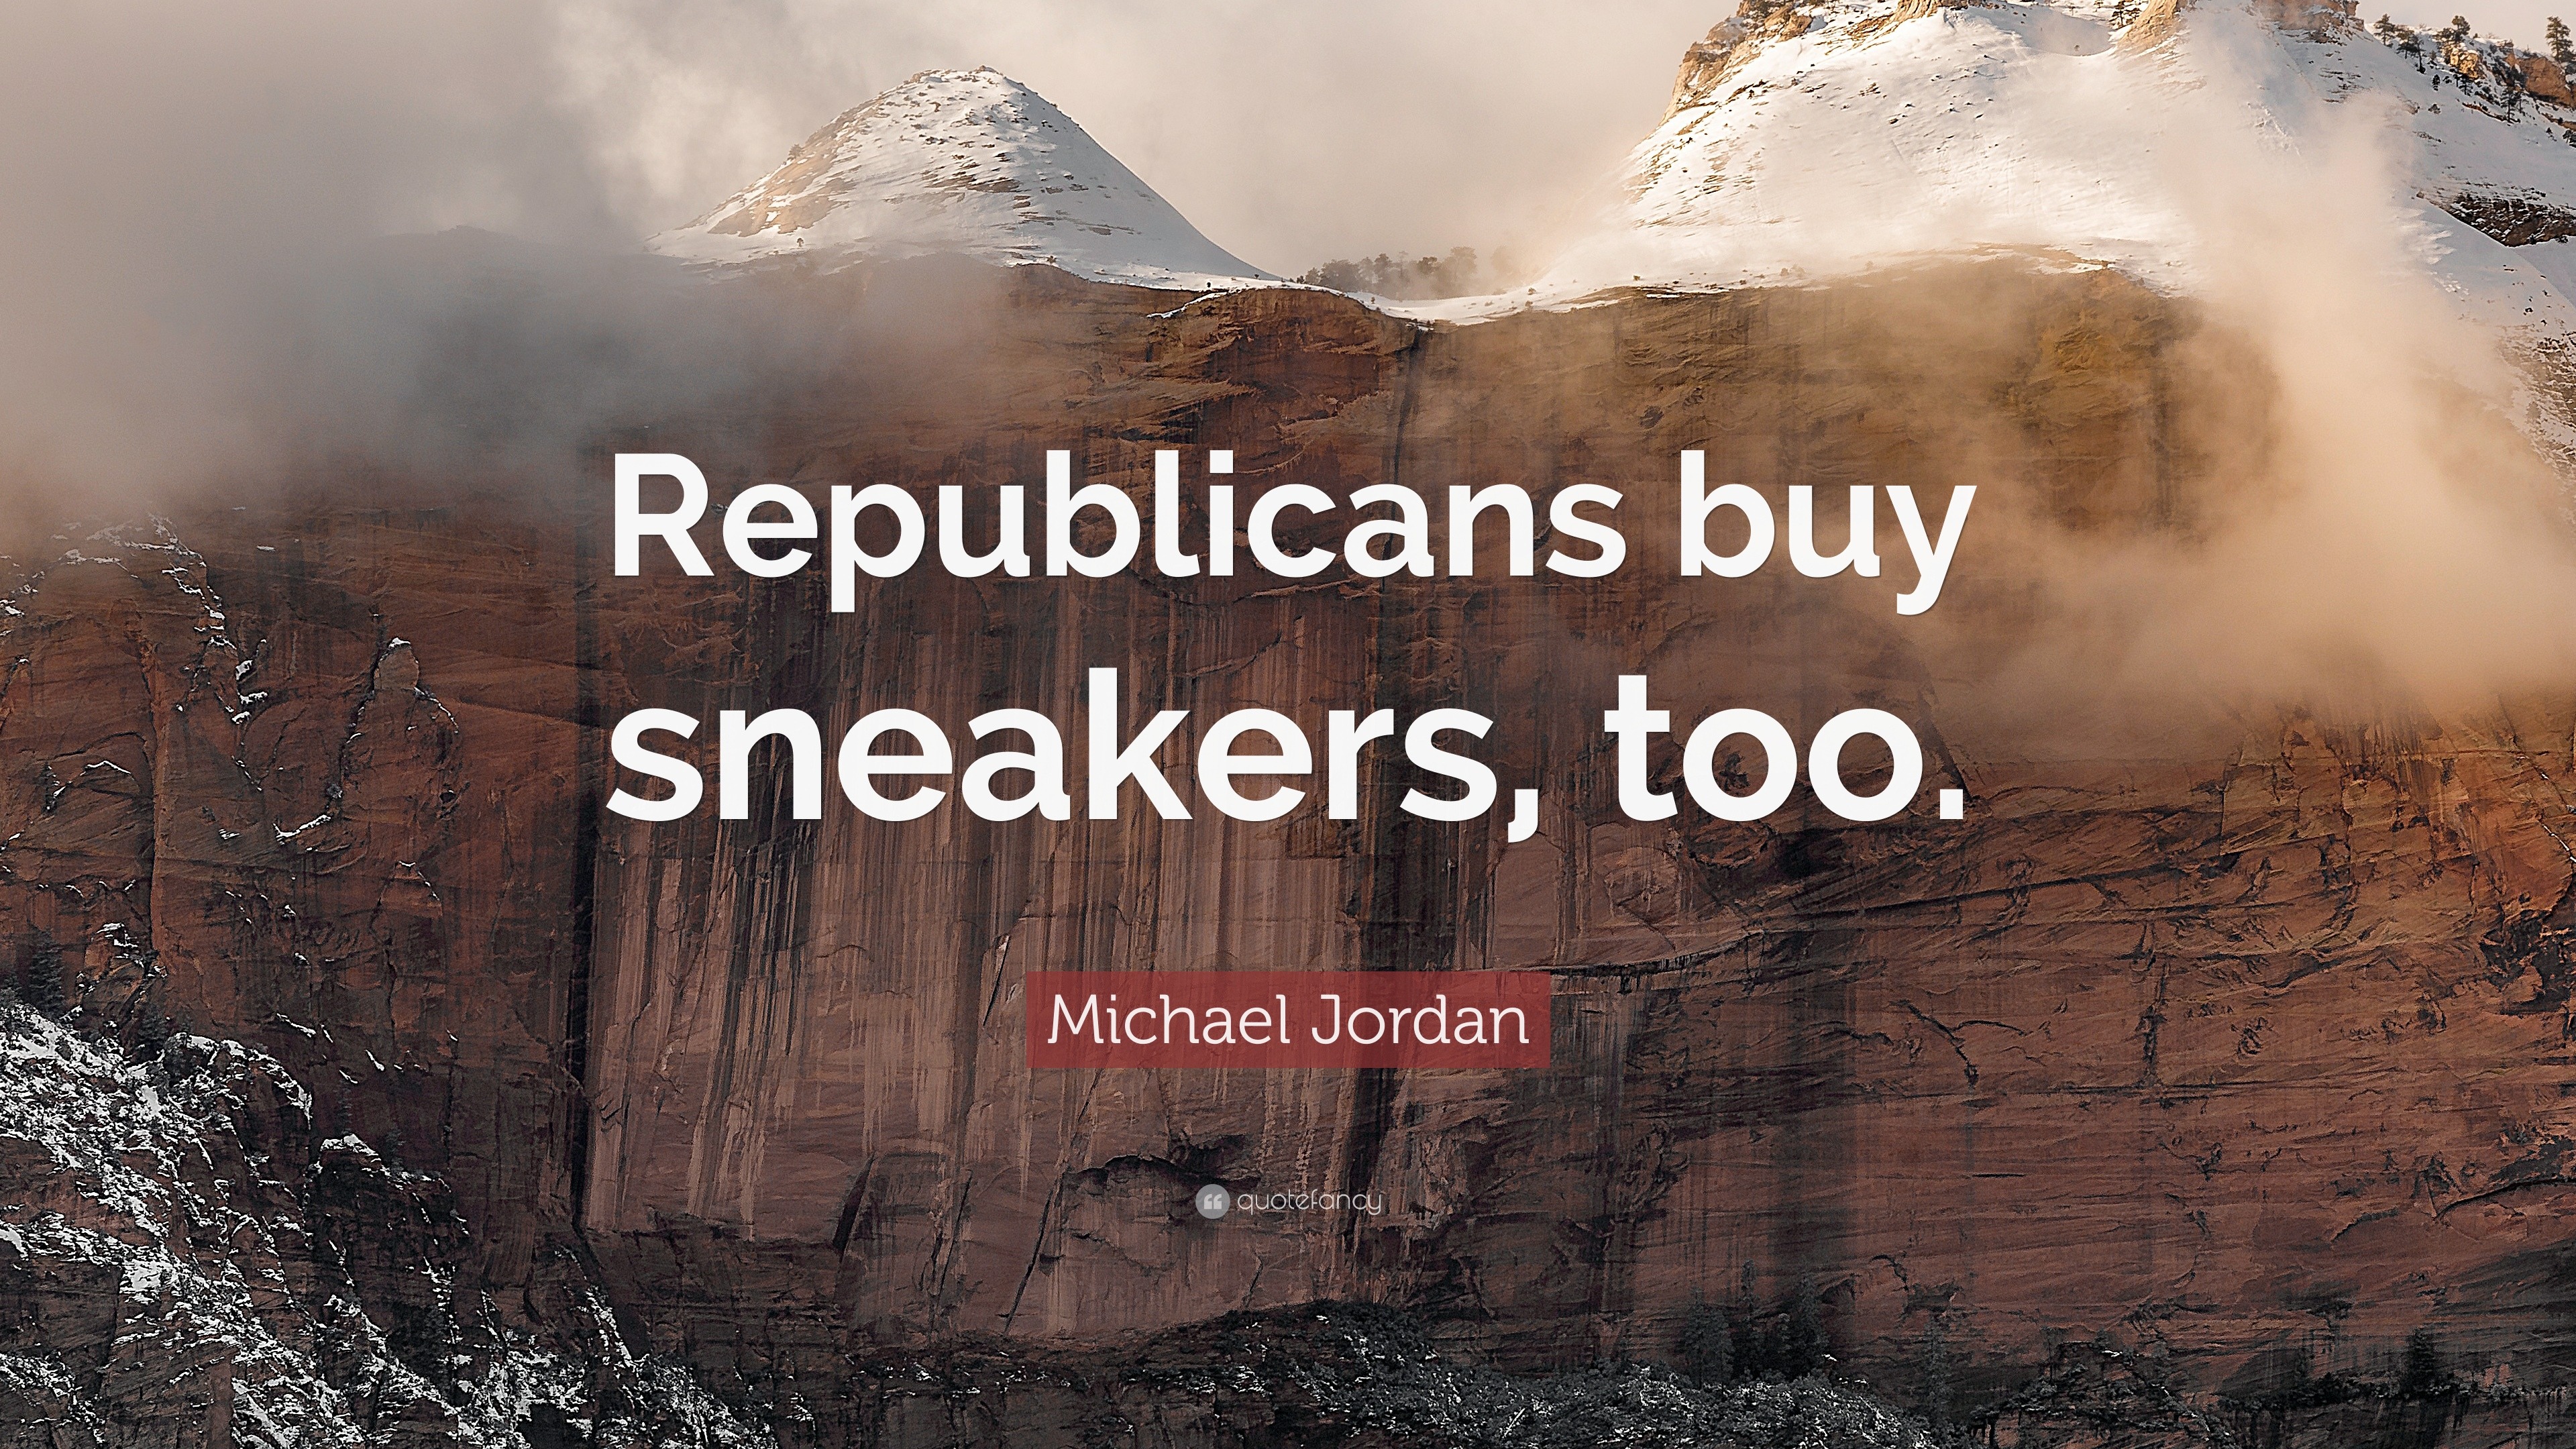 Michael Jordan Quote: “Republicans buy sneakers, too.”